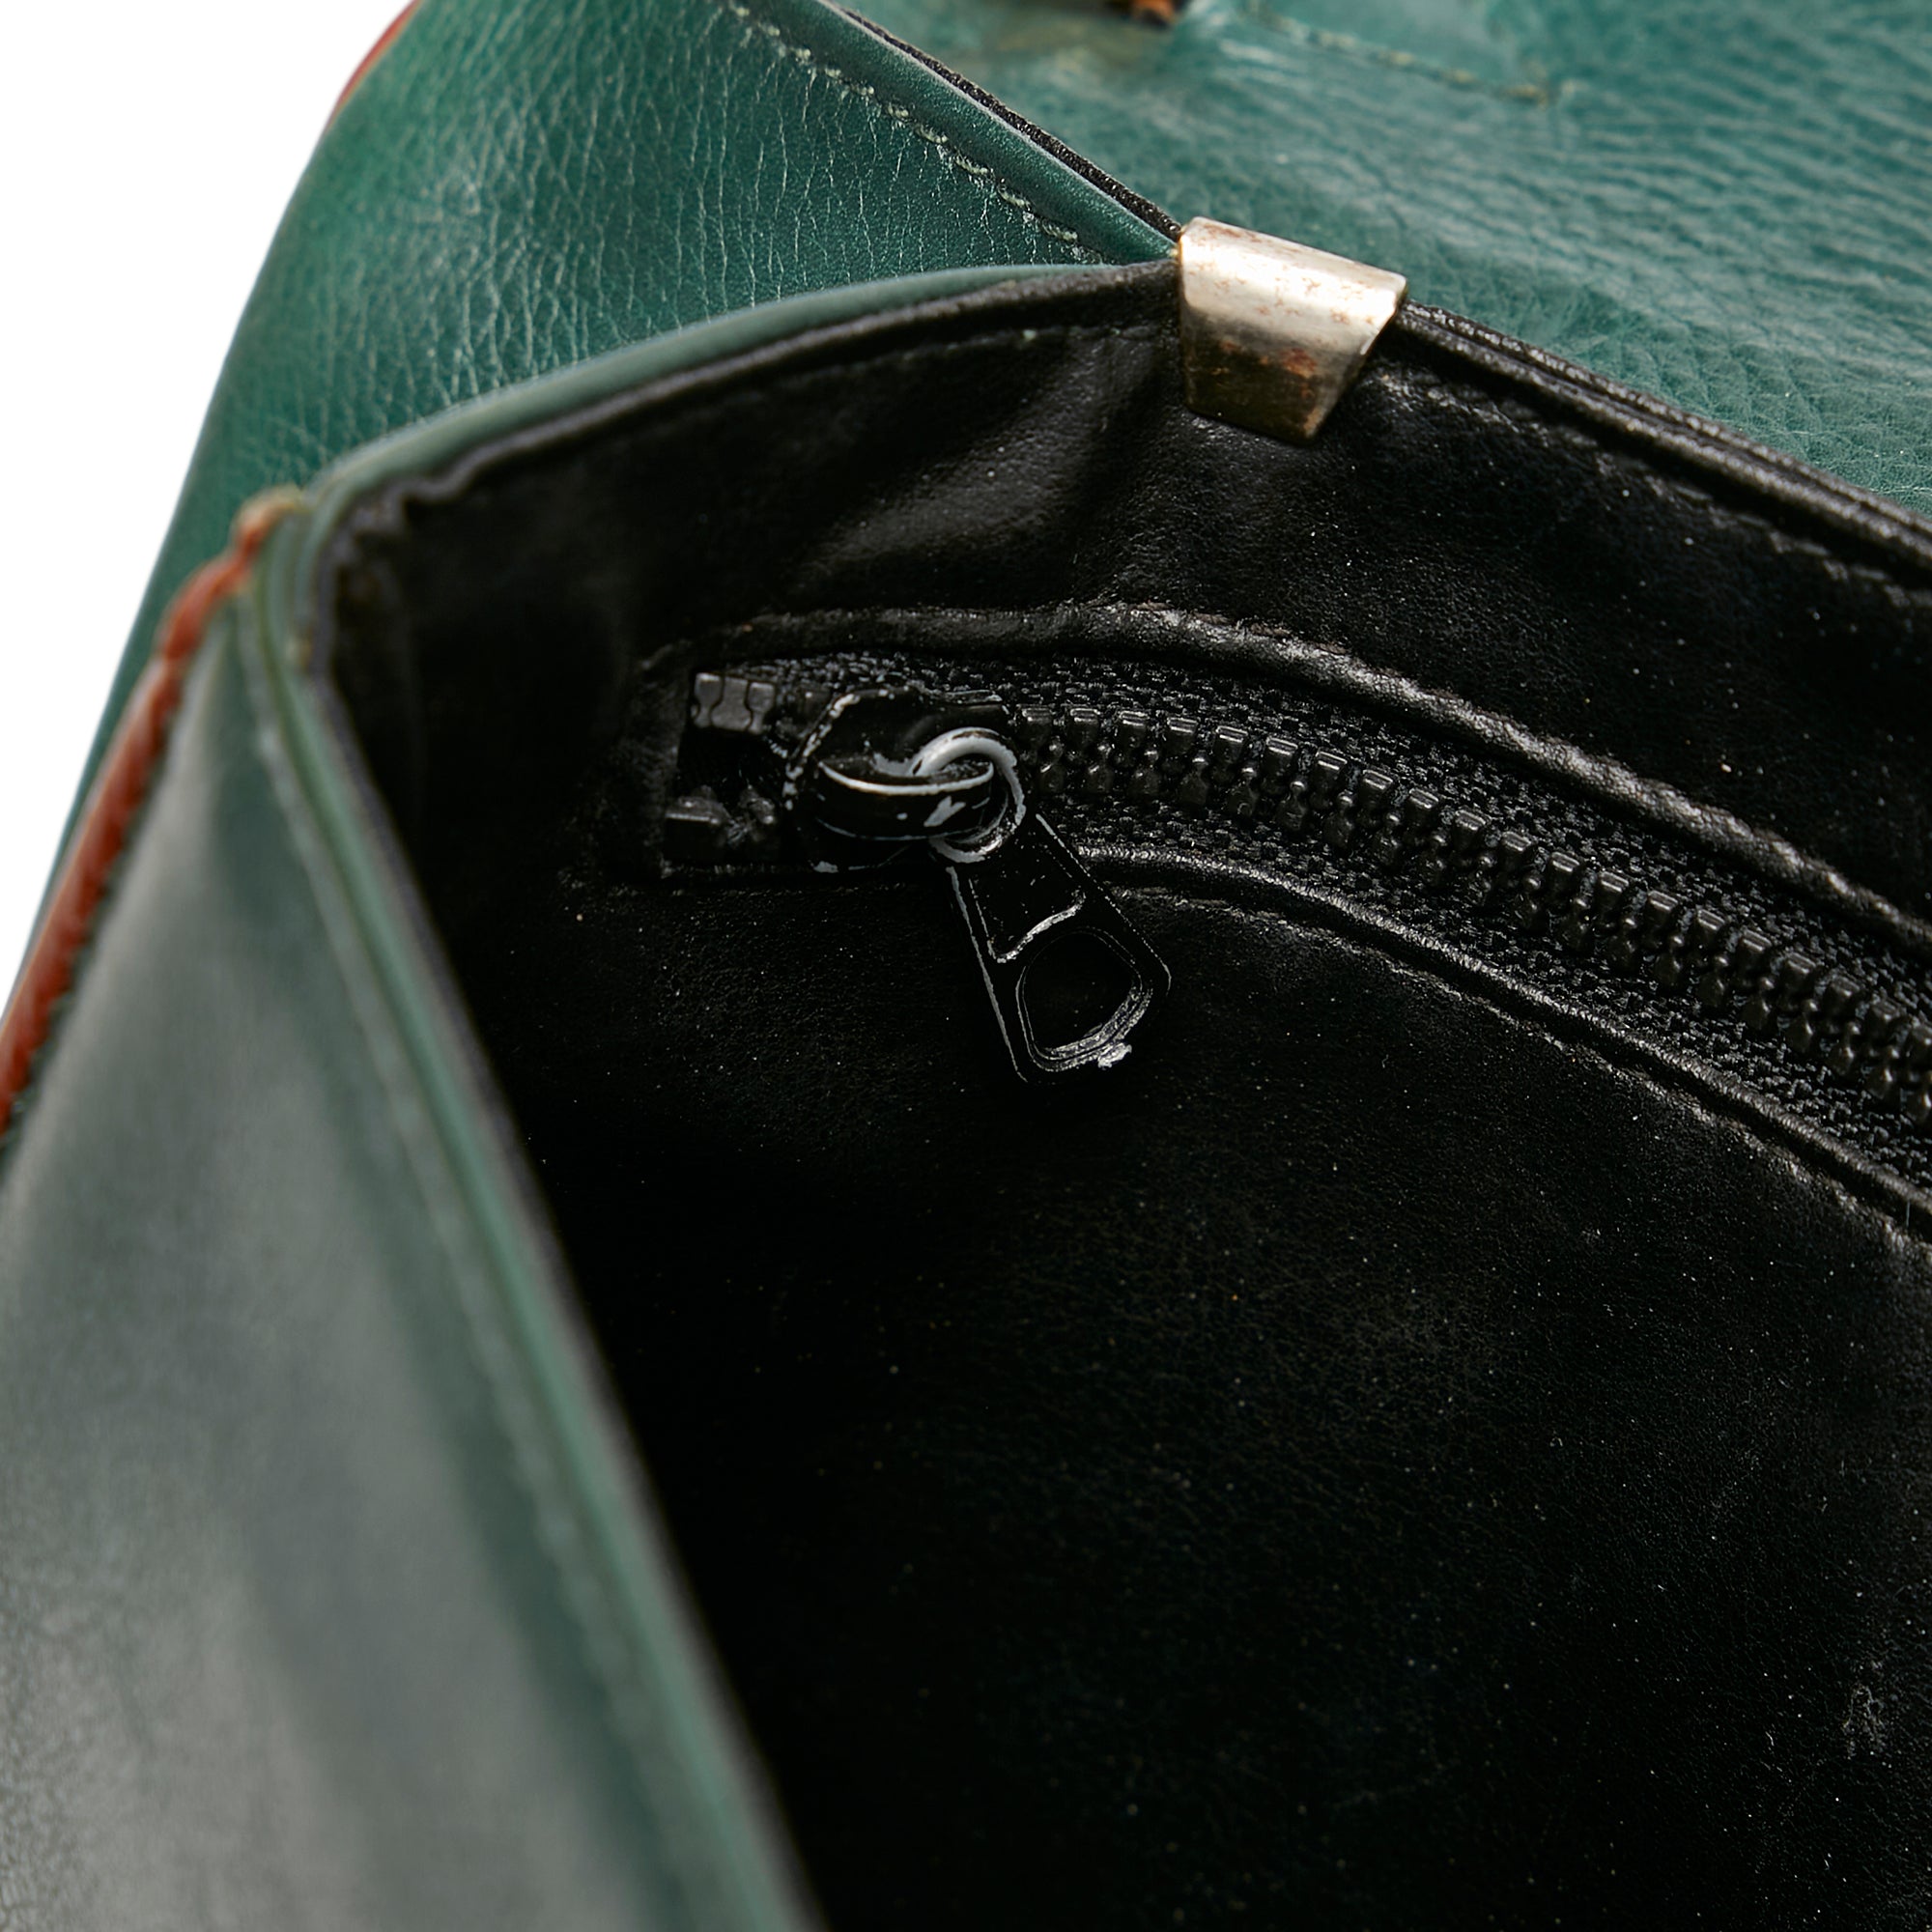 Green Celine Leather Clutch Bag – Designer Revival